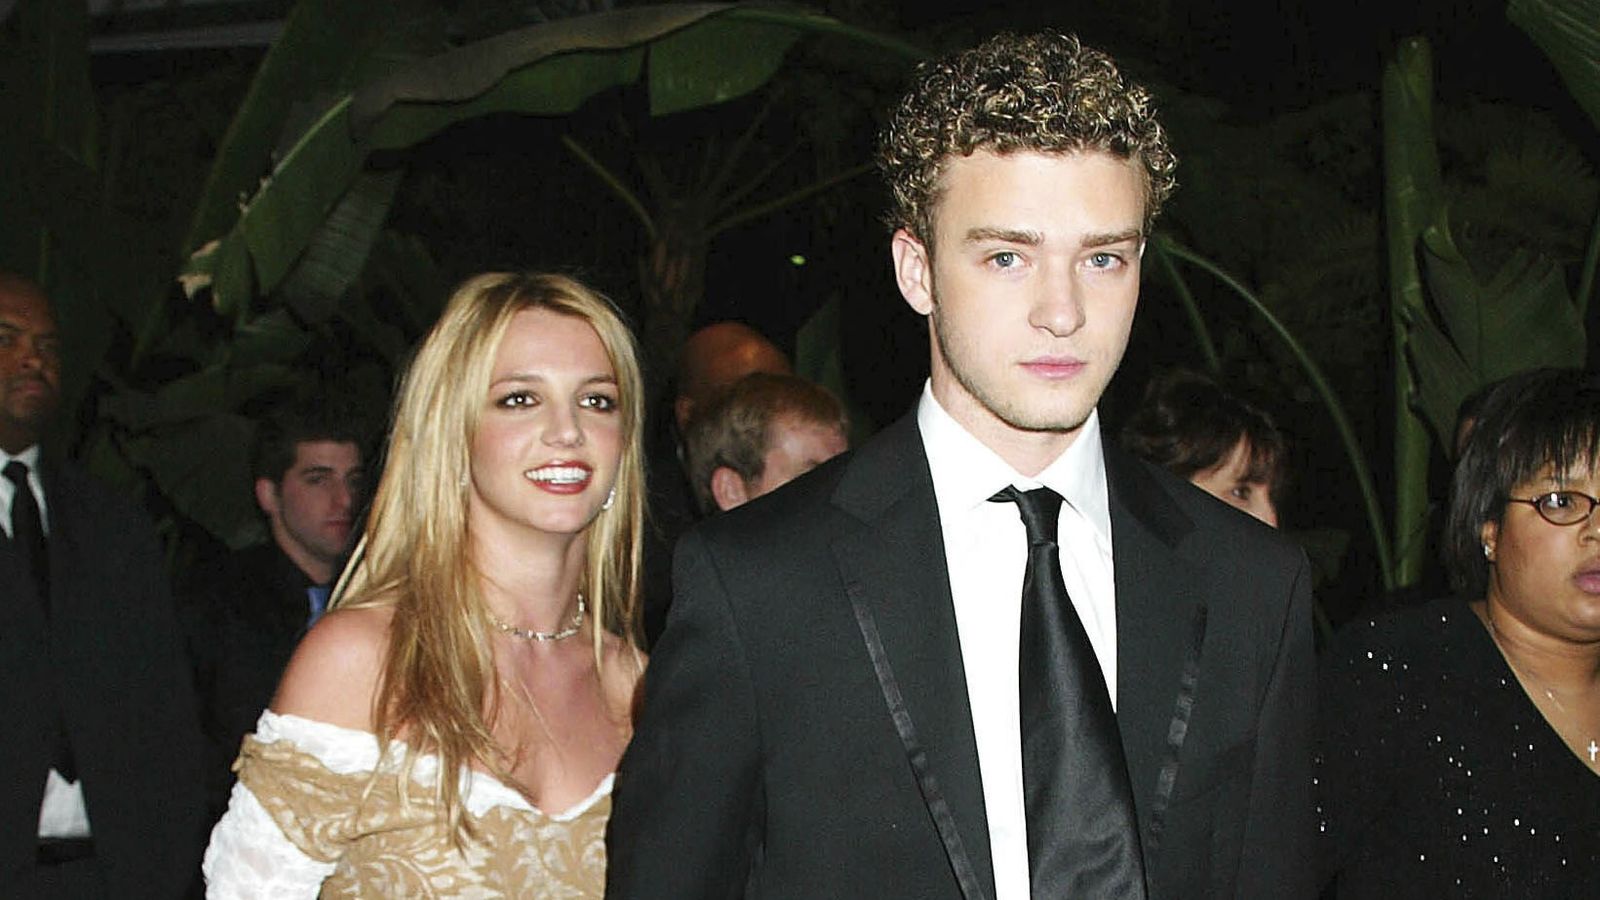 Britney Spears exclui seu pedido de desculpas a Justin Timberlake após suas declarações durante o show |  Notícias sobre artes e artes